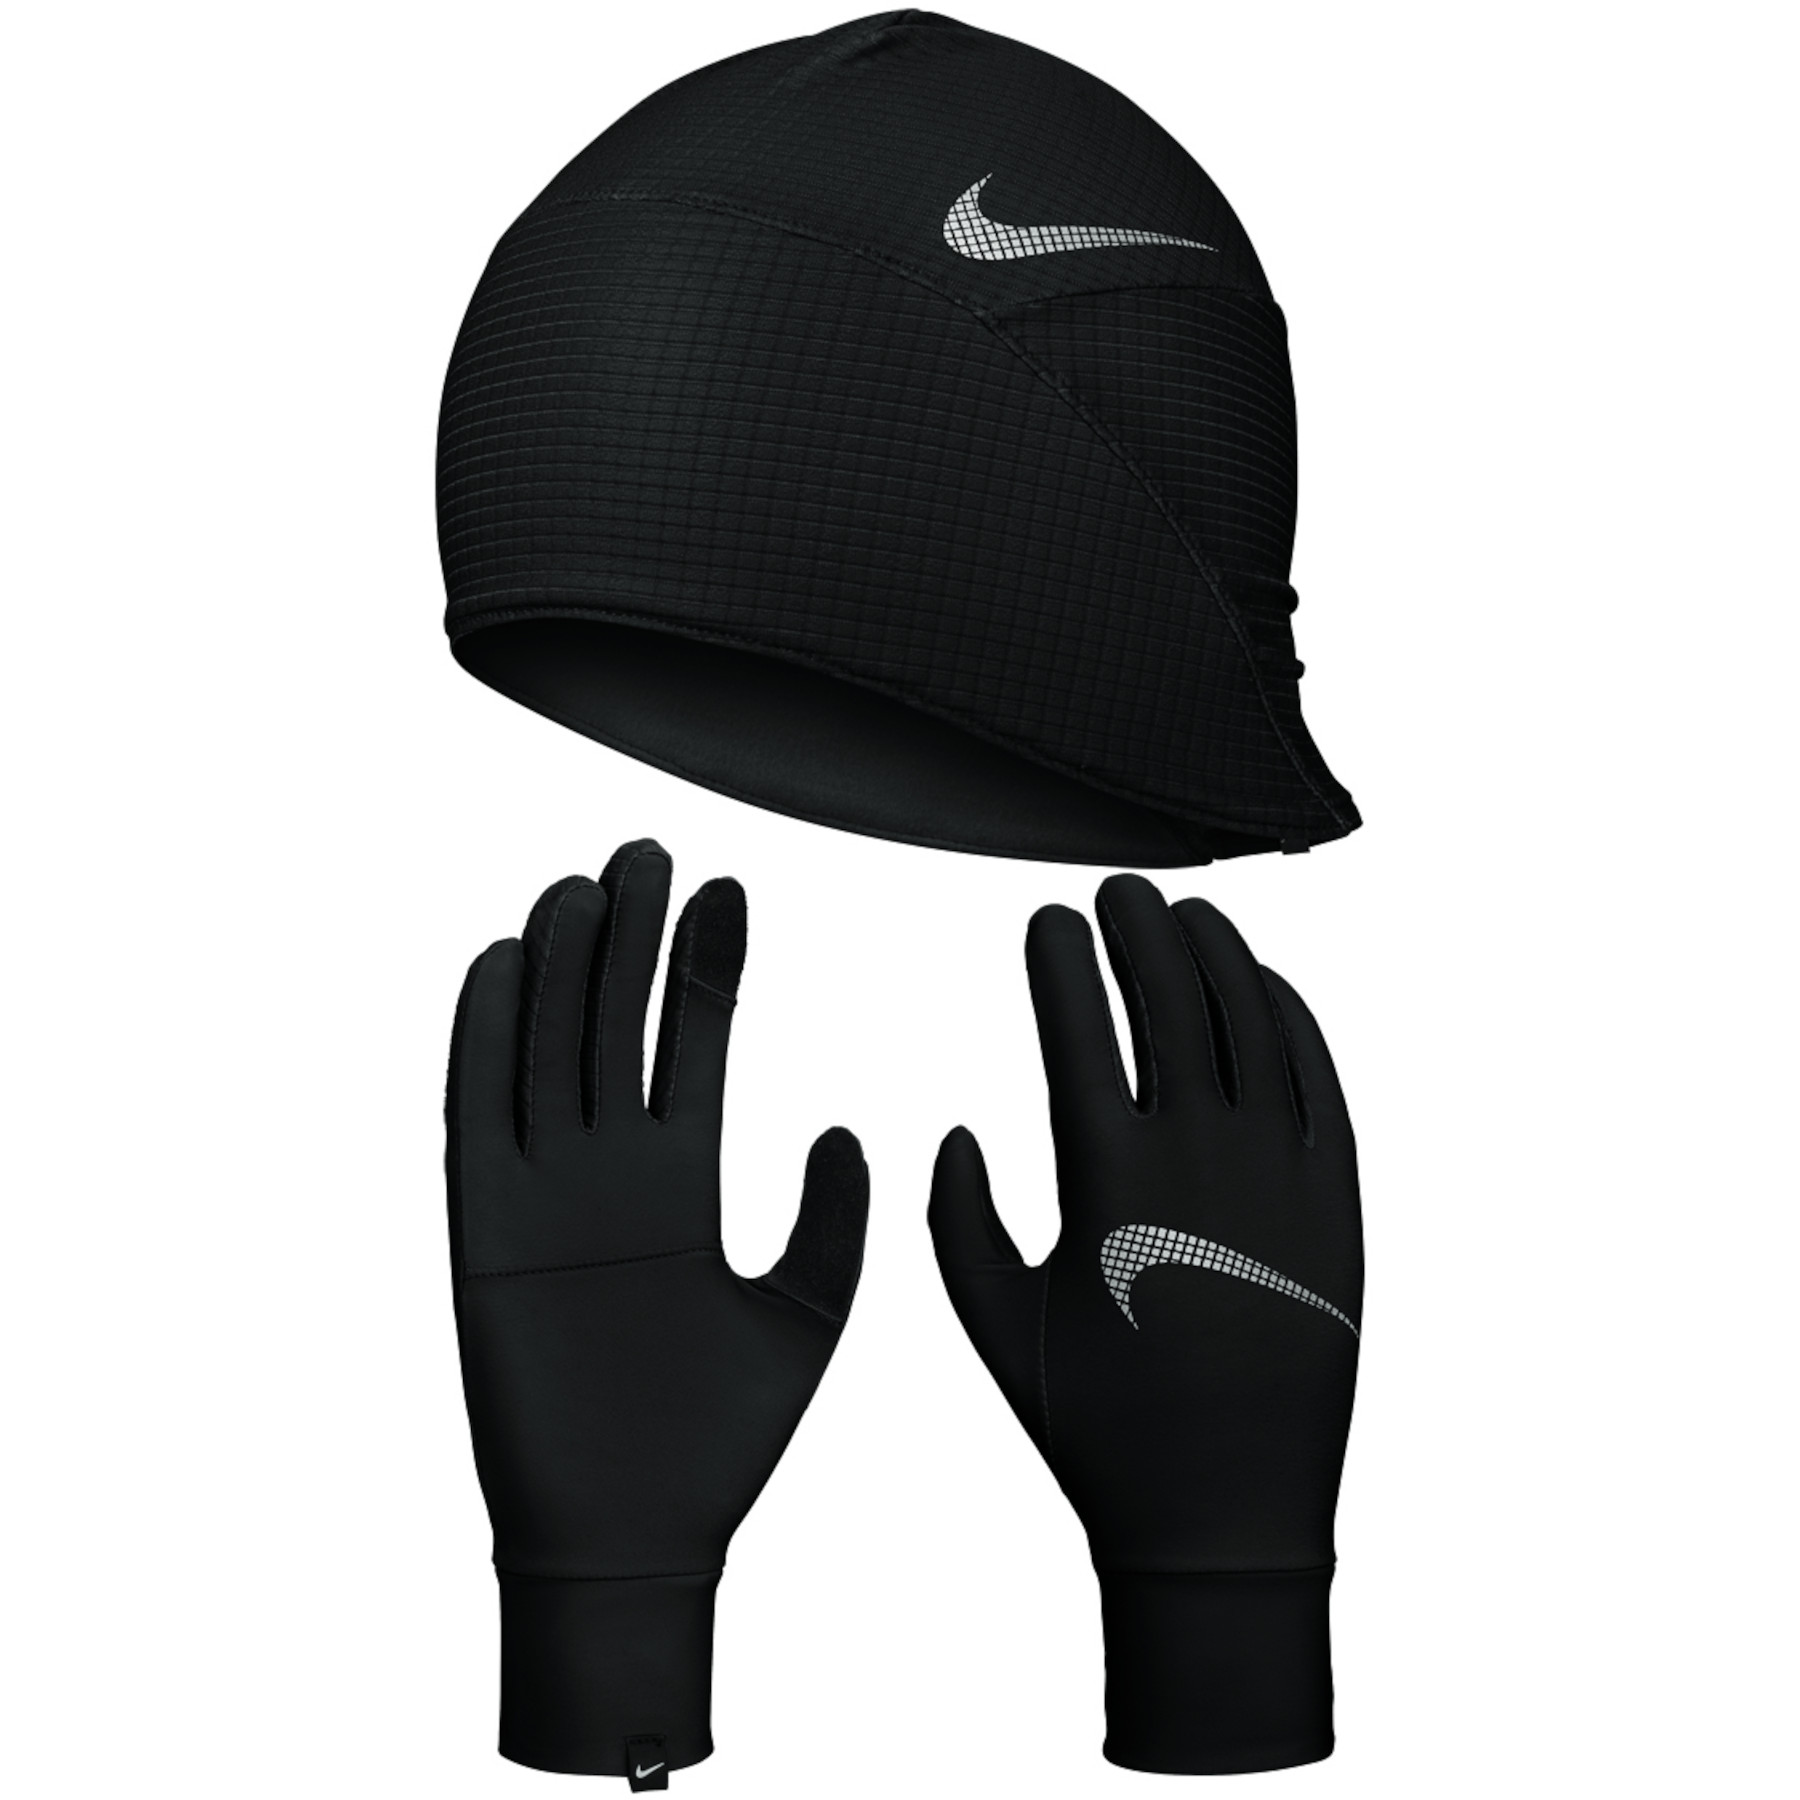 Produktbild von Nike Essential Running Damen Set Handschuhe + Mütze - schwarz/schwarz/silber 082